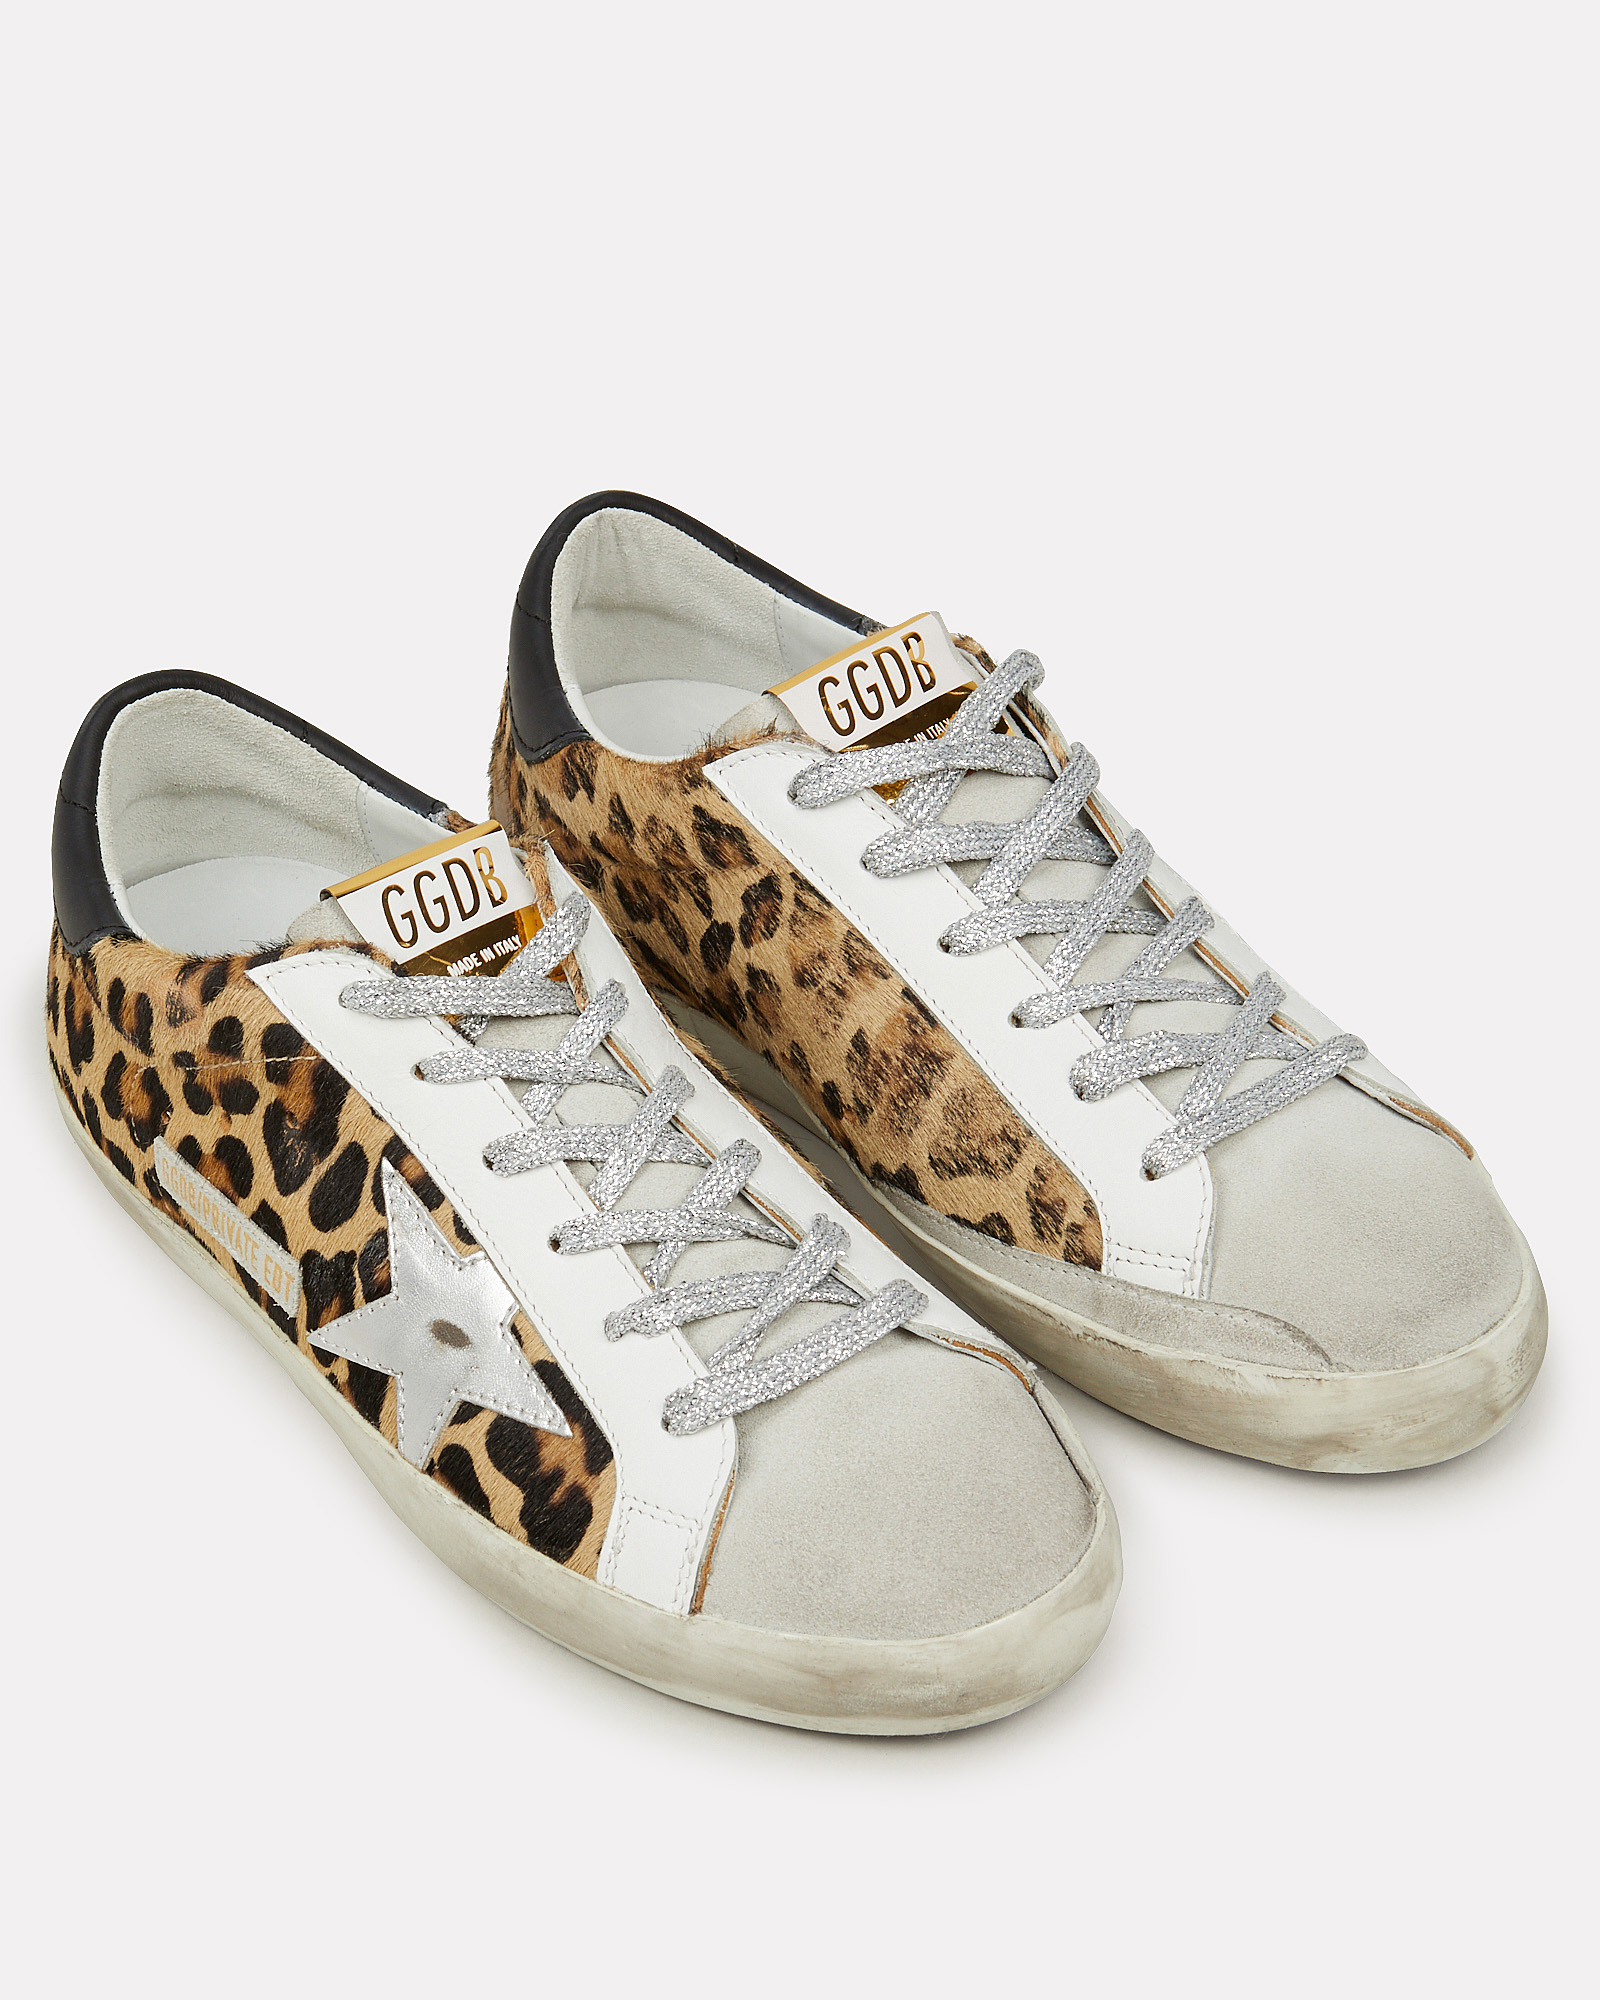 Golden Goose | Superstar Leopard Low-Top Sneakers | INTERMIX®